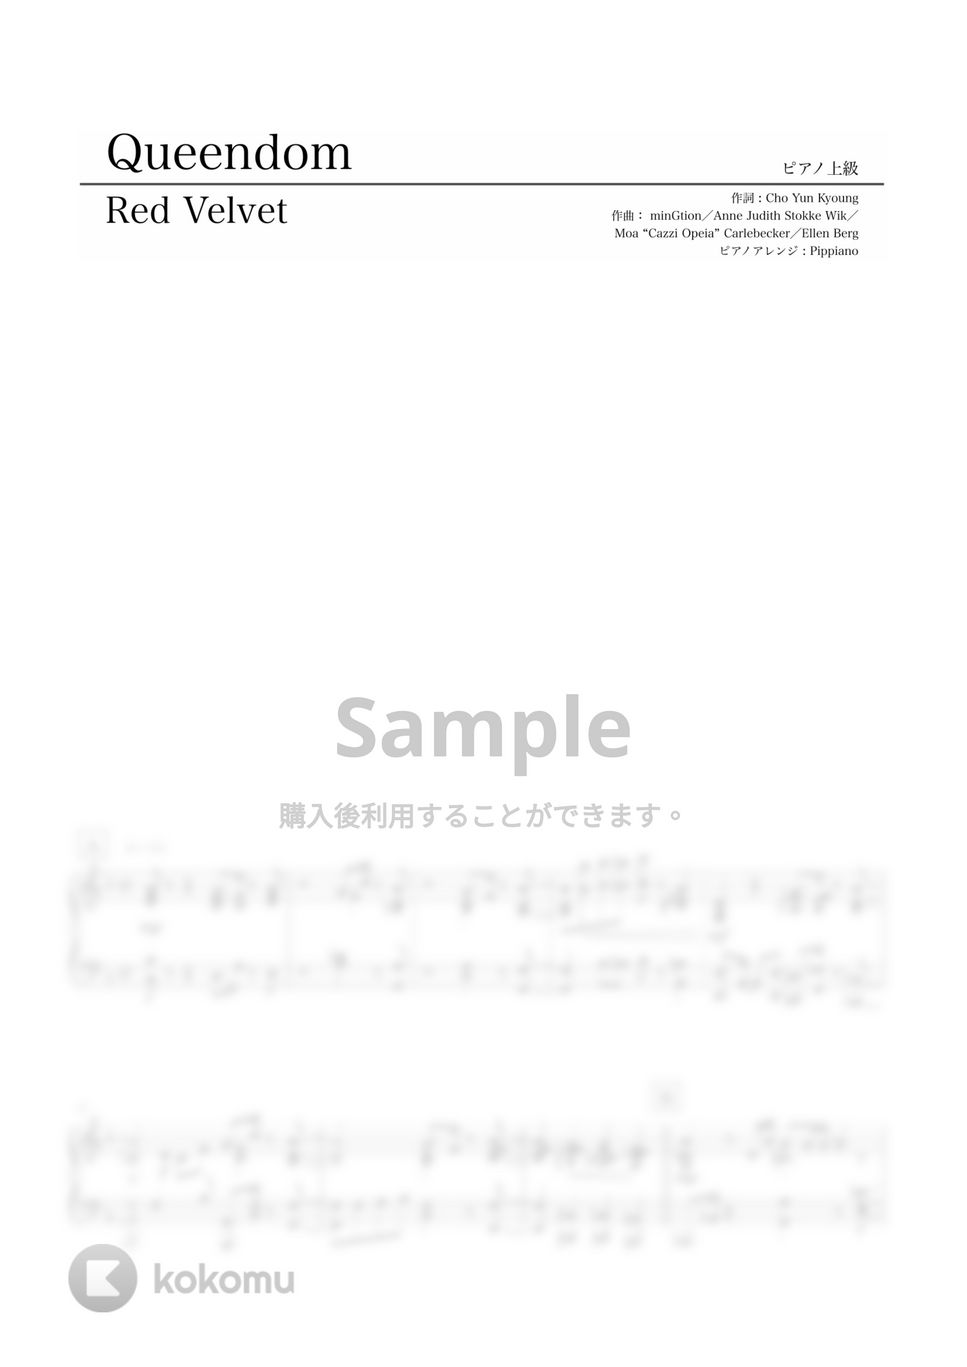 Red Velvet - Queendom by Pippiano